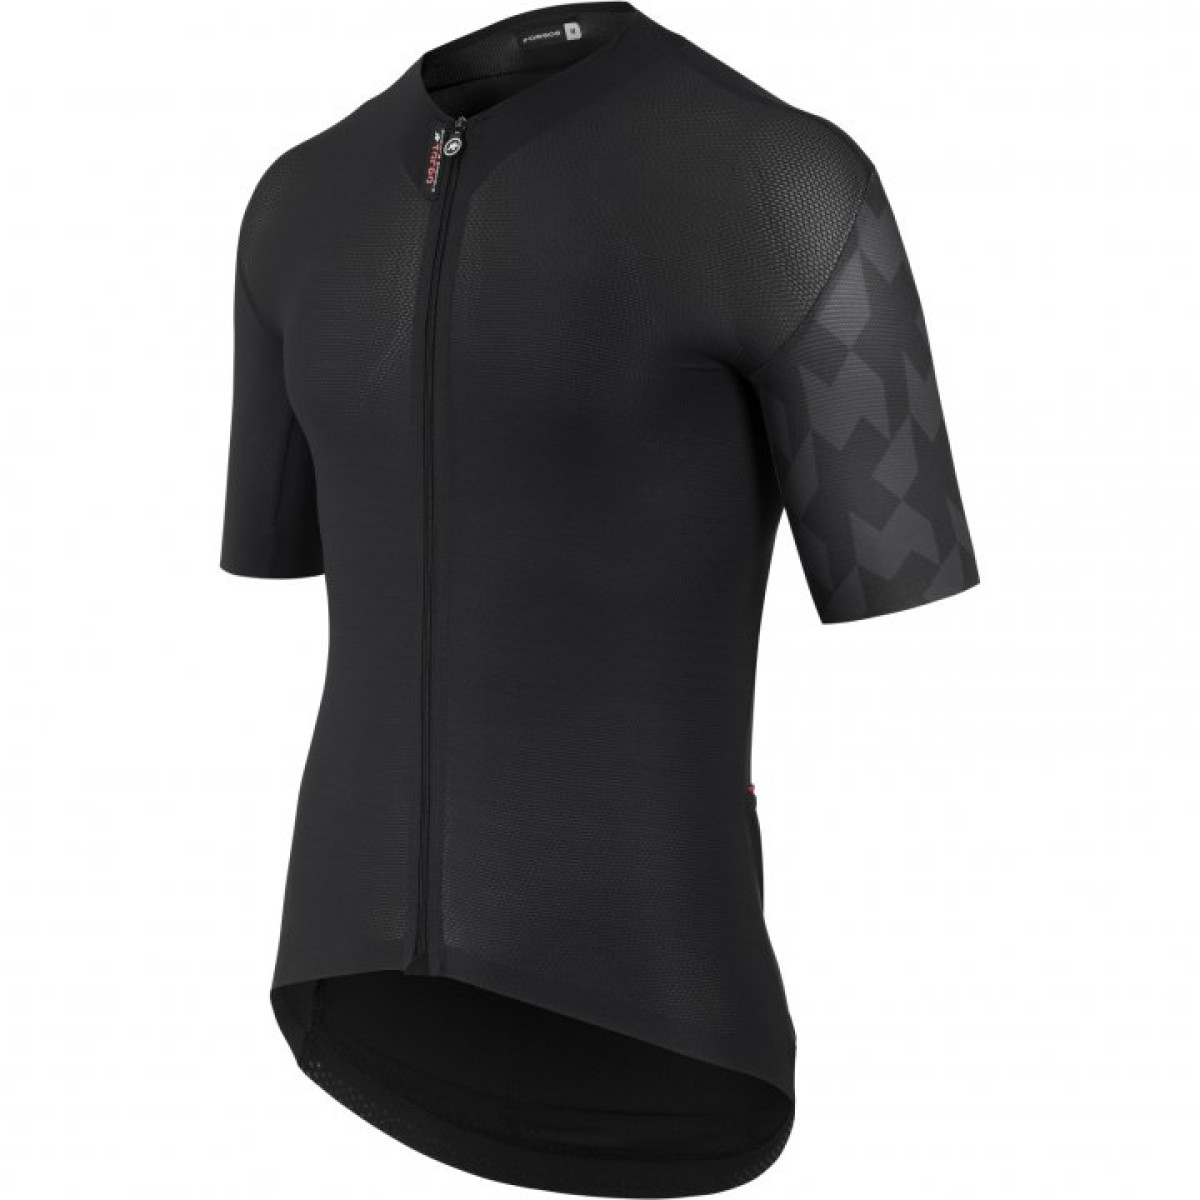 Assos Equipe RS s9 Targa vyriški marškinėliai / Black